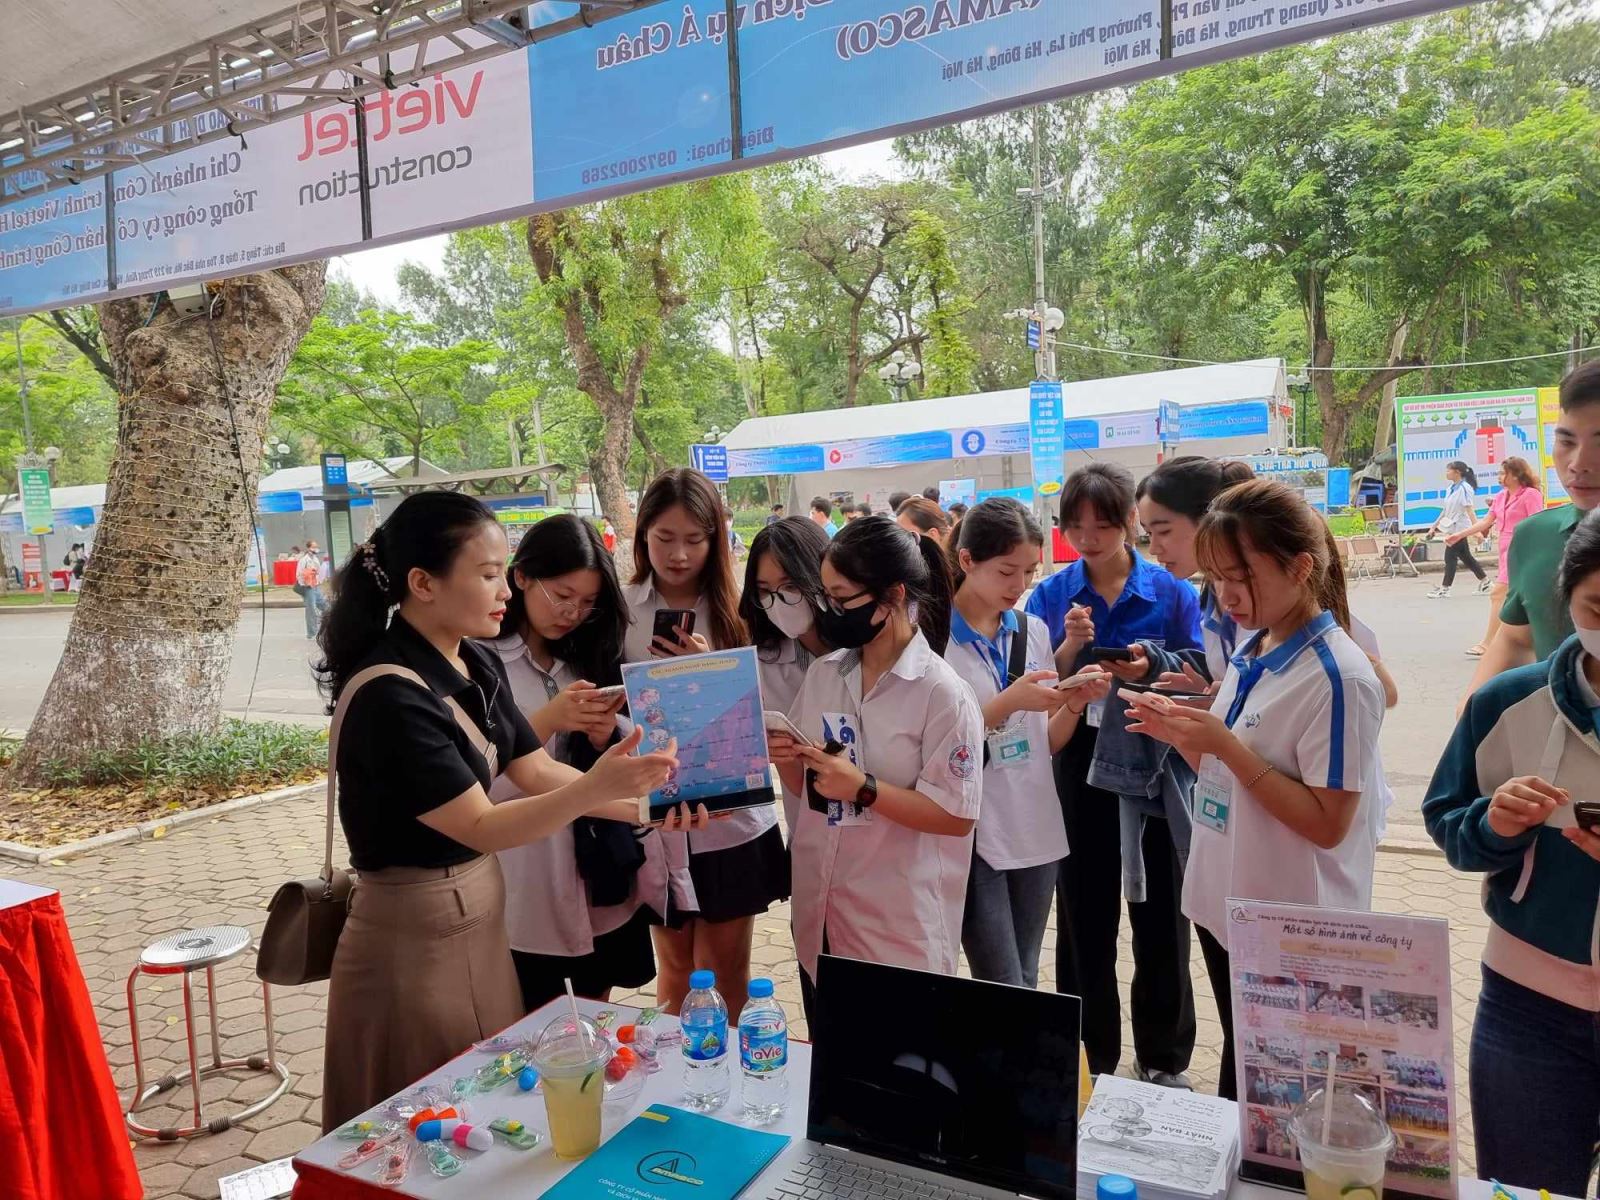  Hà Nội: Gần 4.000 chỉ tiêu tuyển dụng tại Phiên giao dịch và tư vấn việc làm quận Hai Bà Trưng 